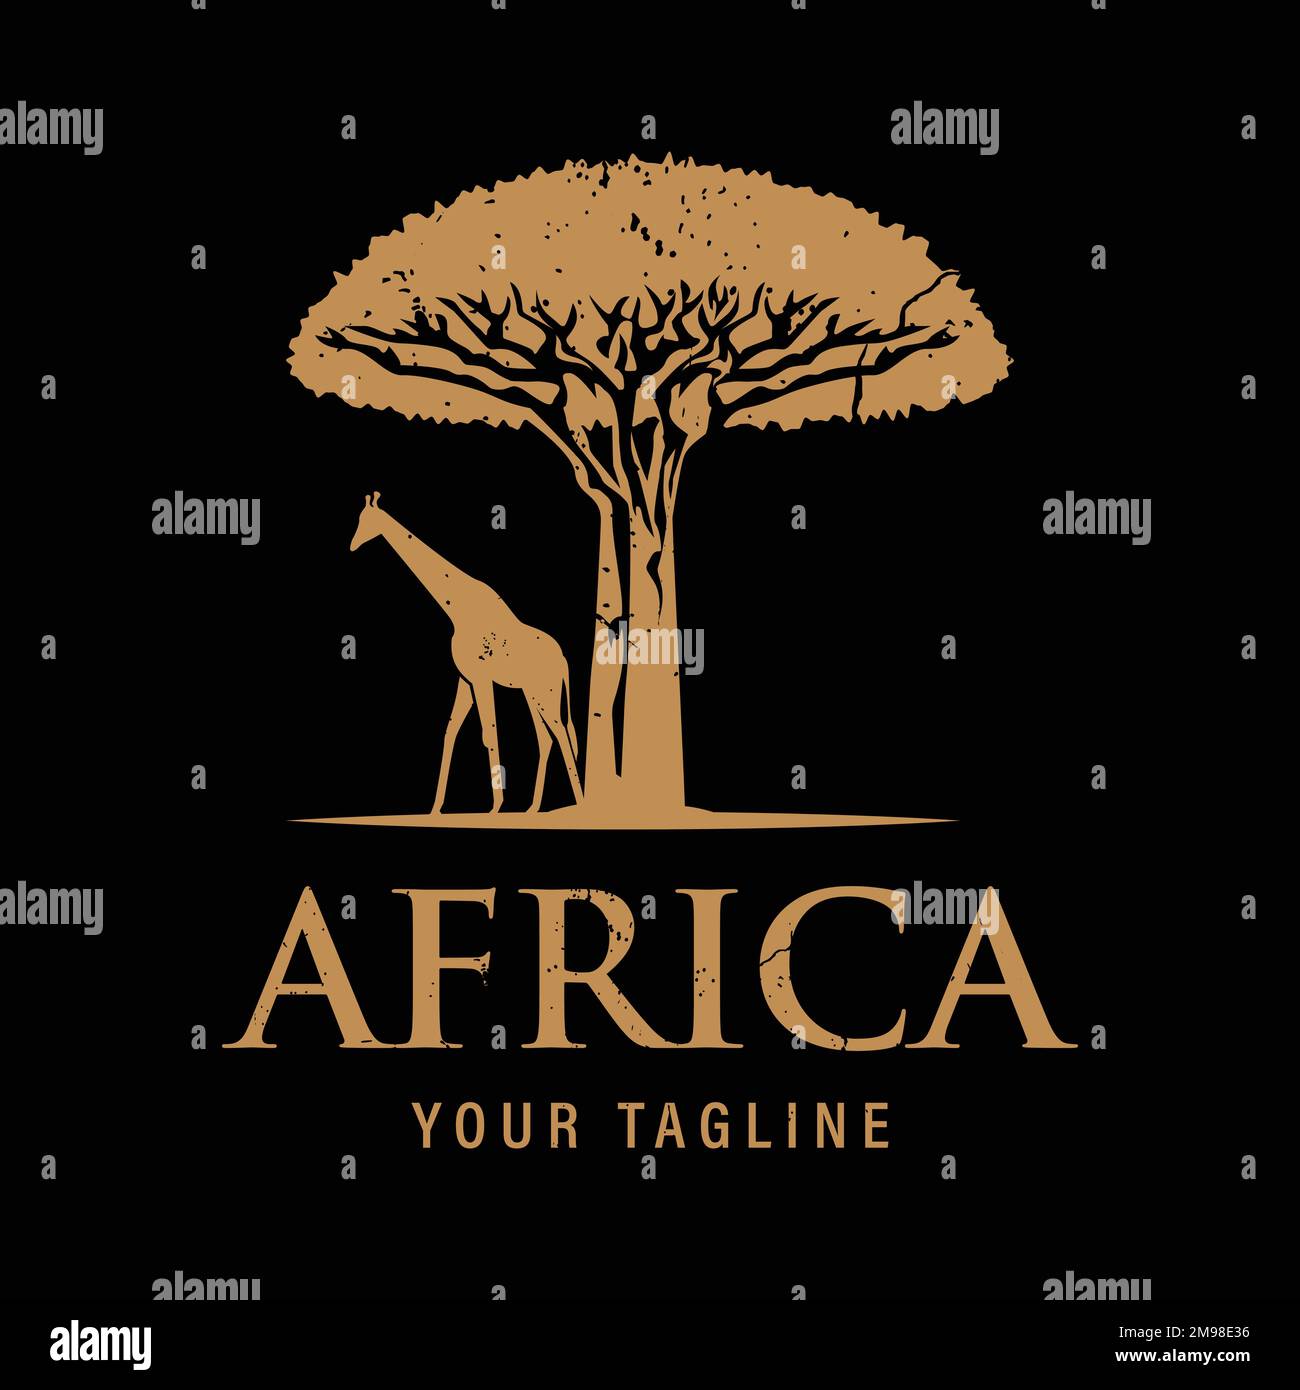 Safari Wildlife Logo design ispirazione vintage silhouette African Giraffe e albero. Disegno semplice del vettore del deserto africano sul più tardi scuro Illustrazione Vettoriale